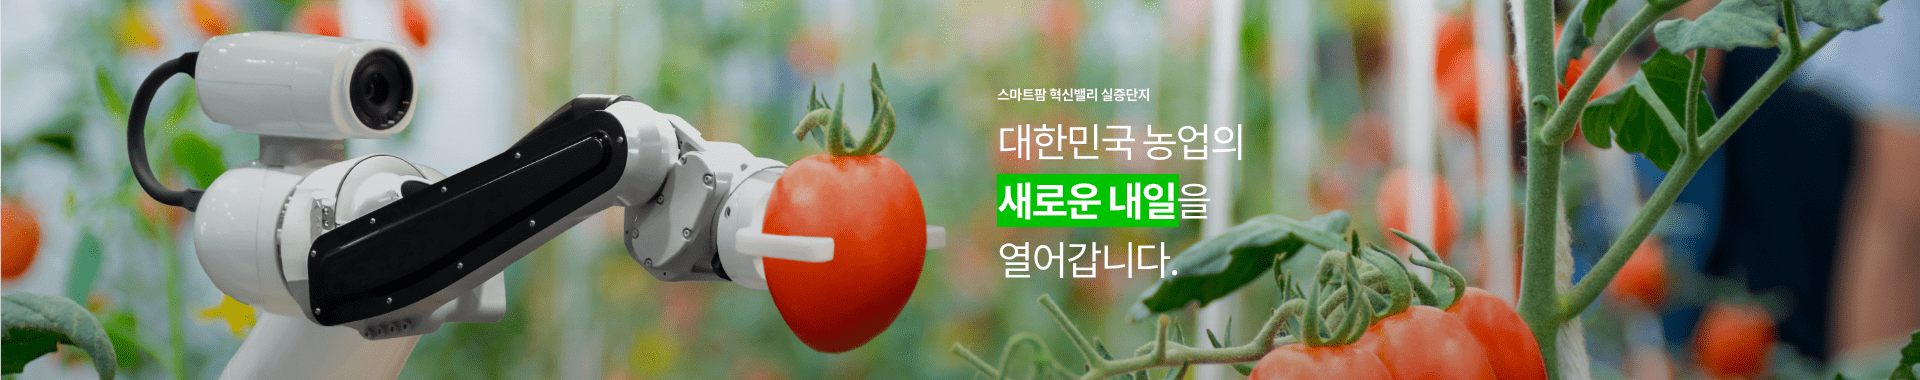 스마트팜 혁신밸리 실증단지 / 대한민국의 농업의 새로울 내일을 열어갑니다.